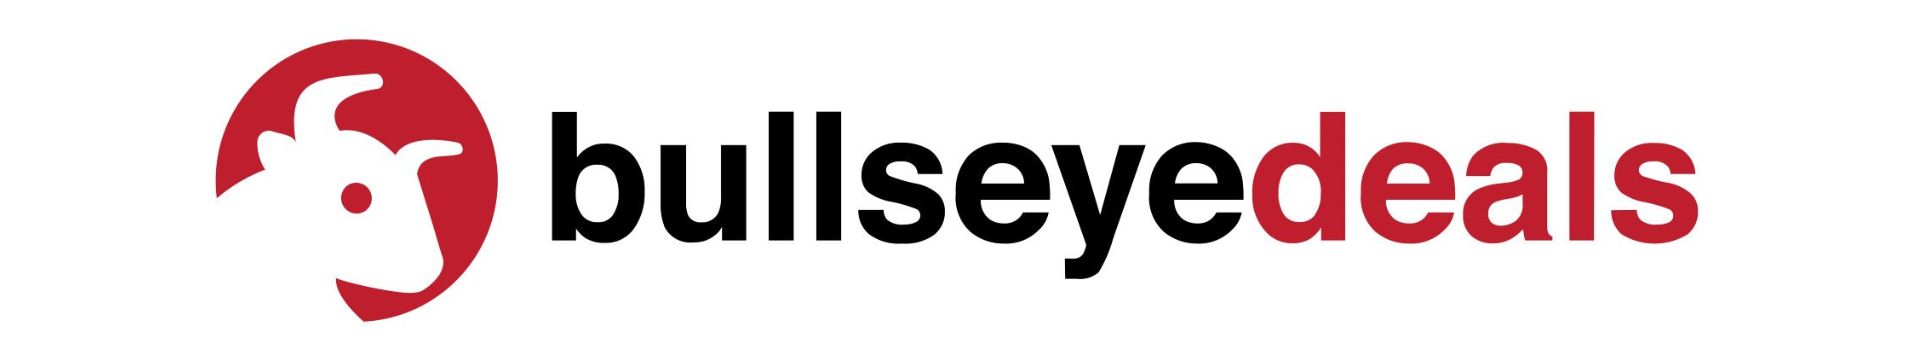 Bullseye Deals Store - Newegg.com